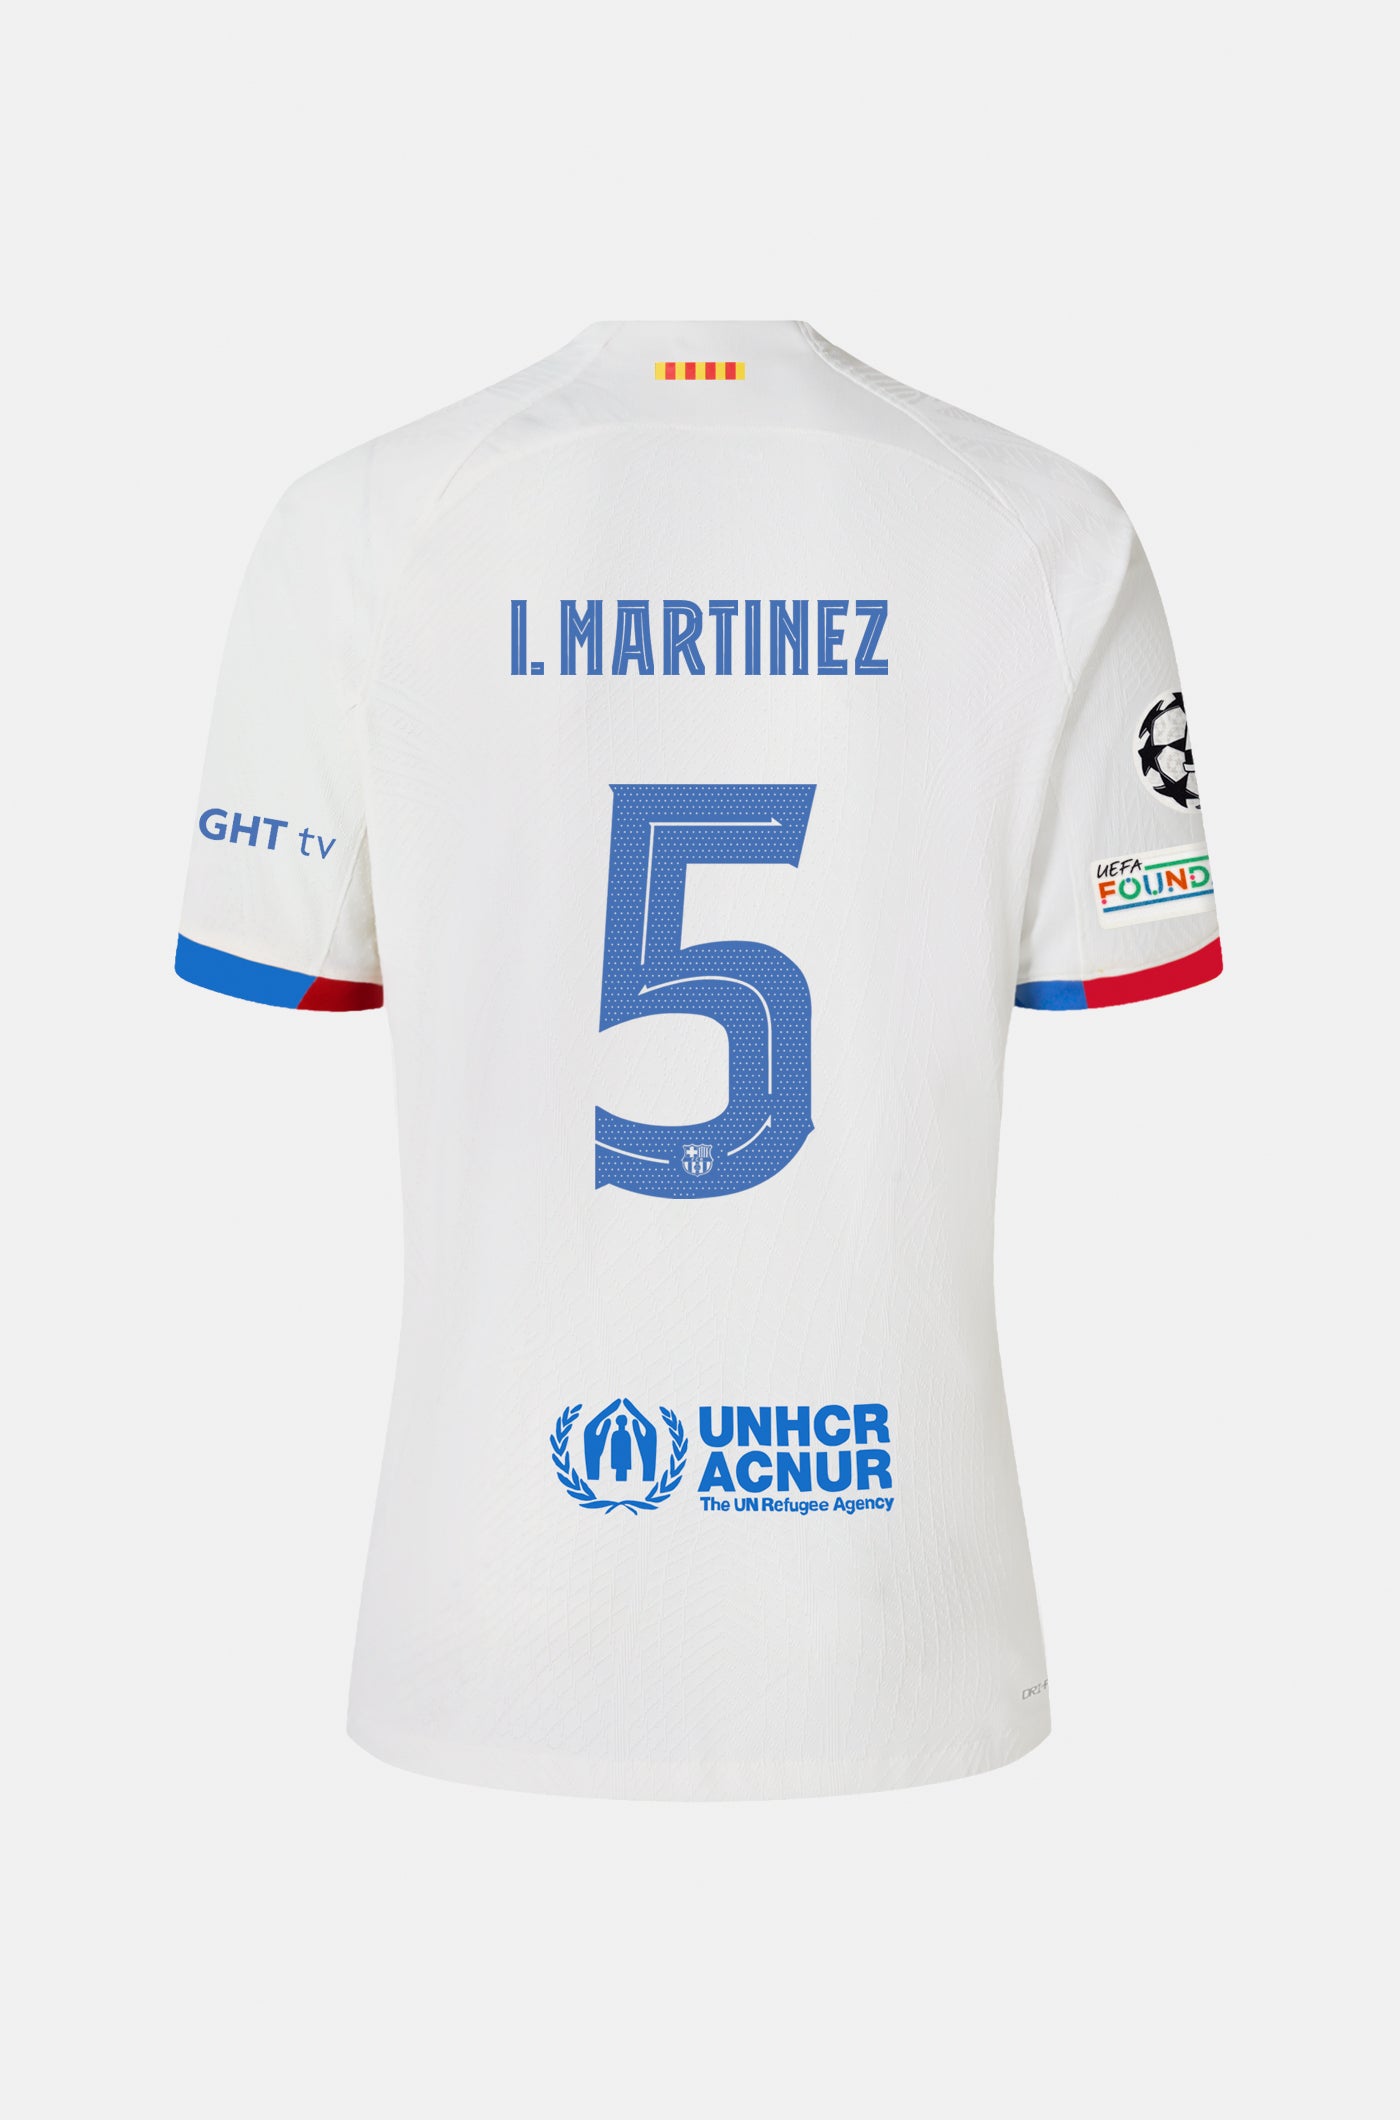 UCL FC Barcelona away shirt 23/24 - Junior - I. MARTÍNEZ